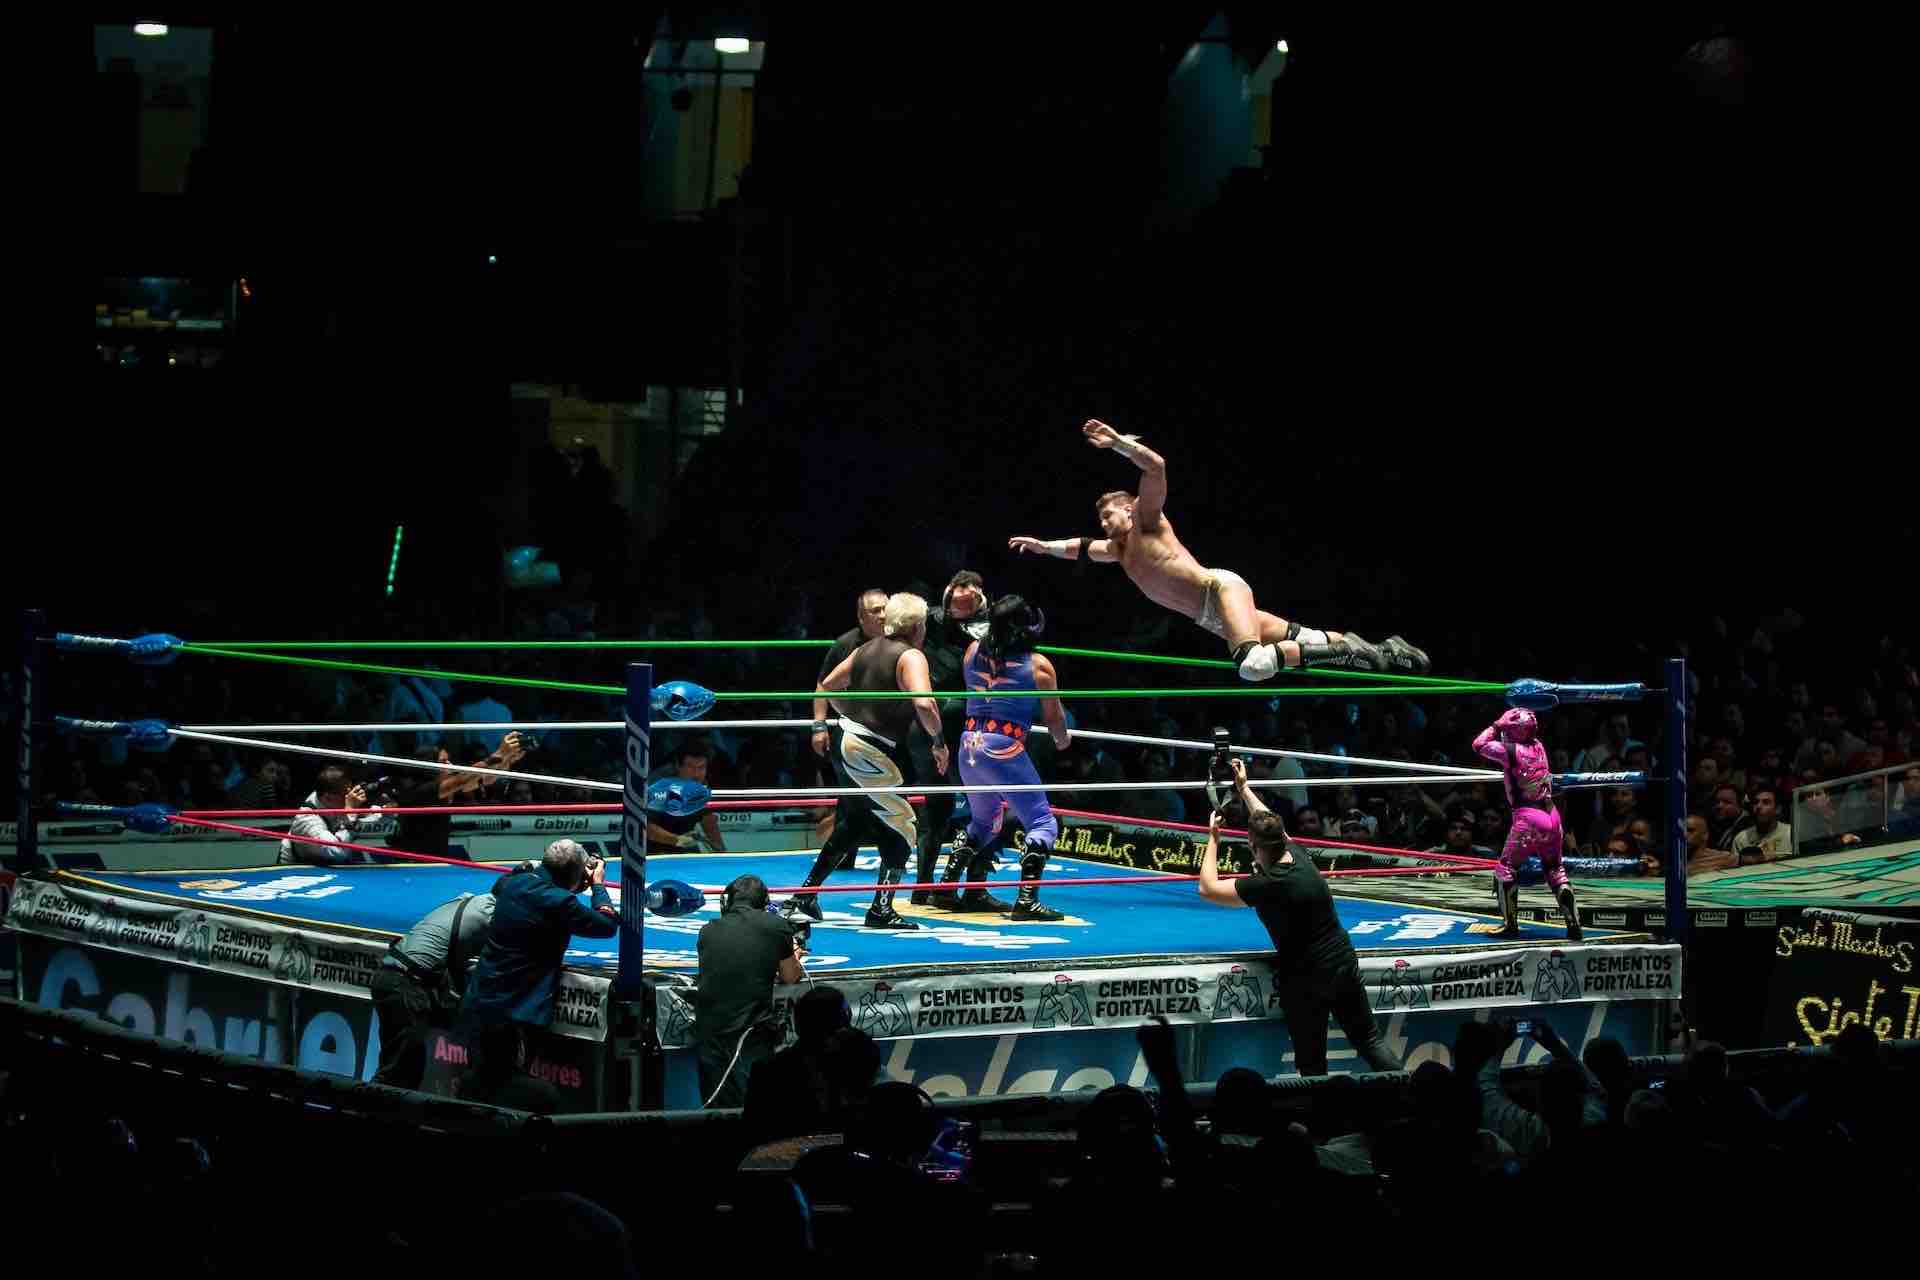 Lucha Libre Mexico City wrestler jumping